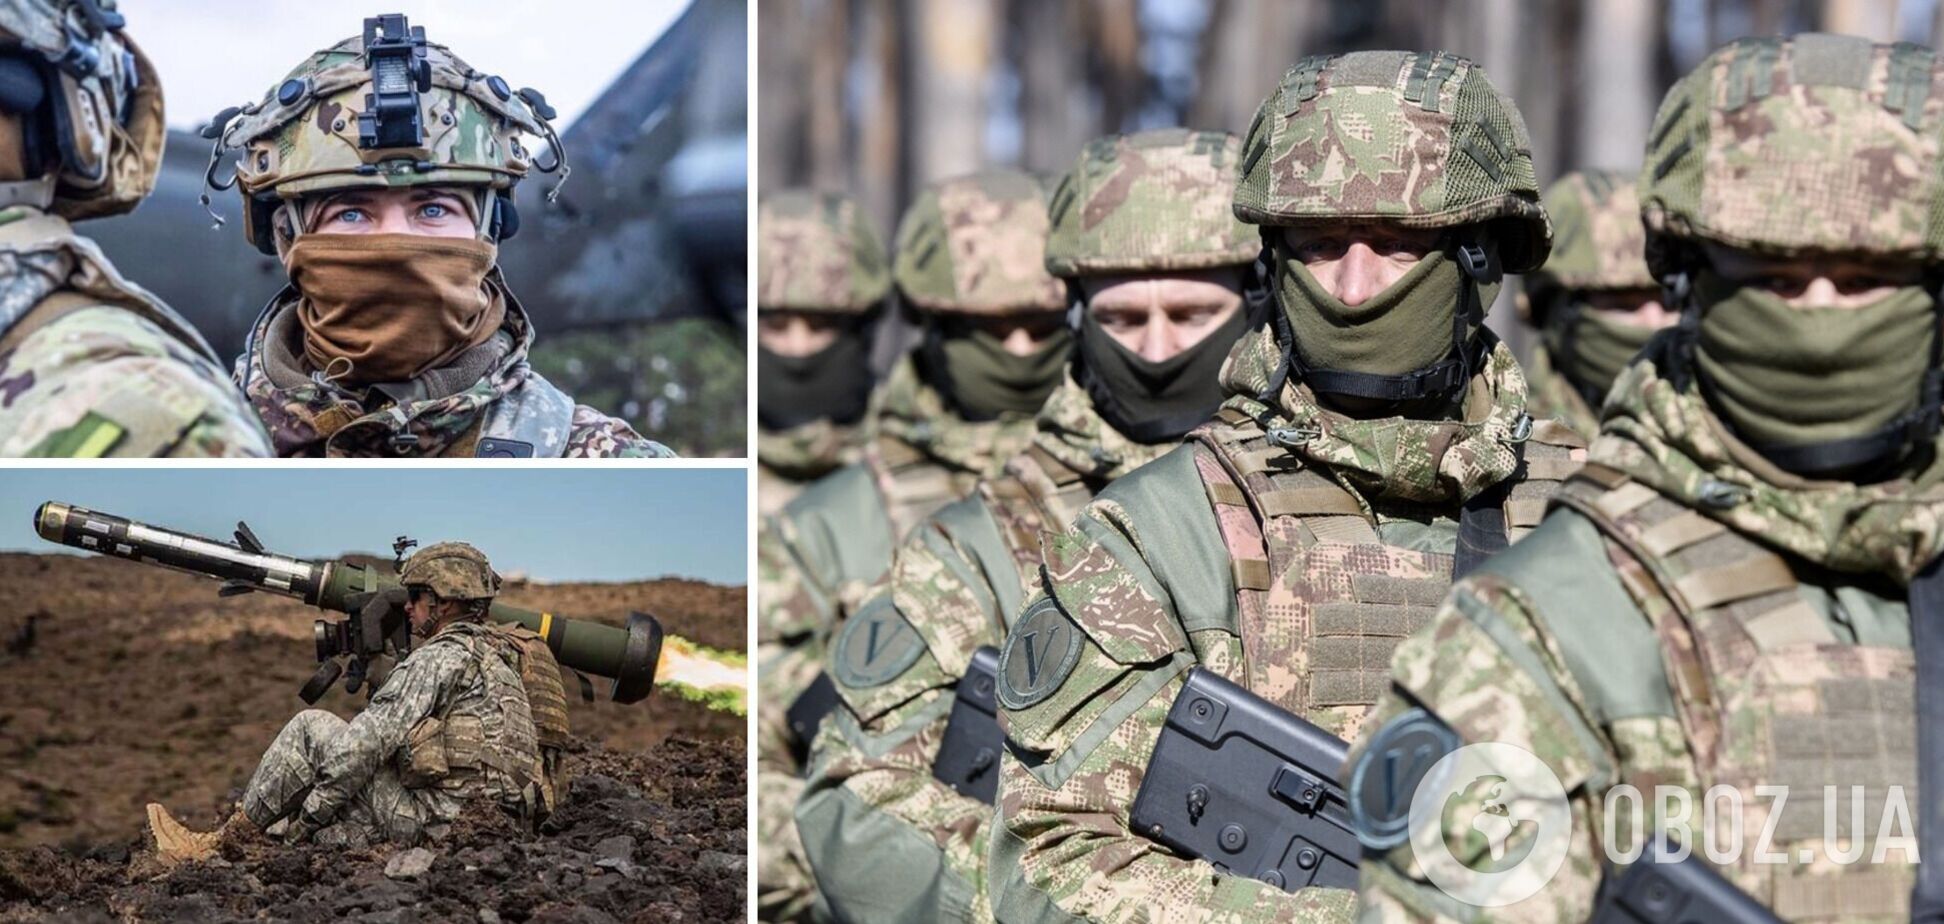 Панове політики, не принижуйте українських воїнів! Знаєте, як воювати - запрошую до ЗСУ!